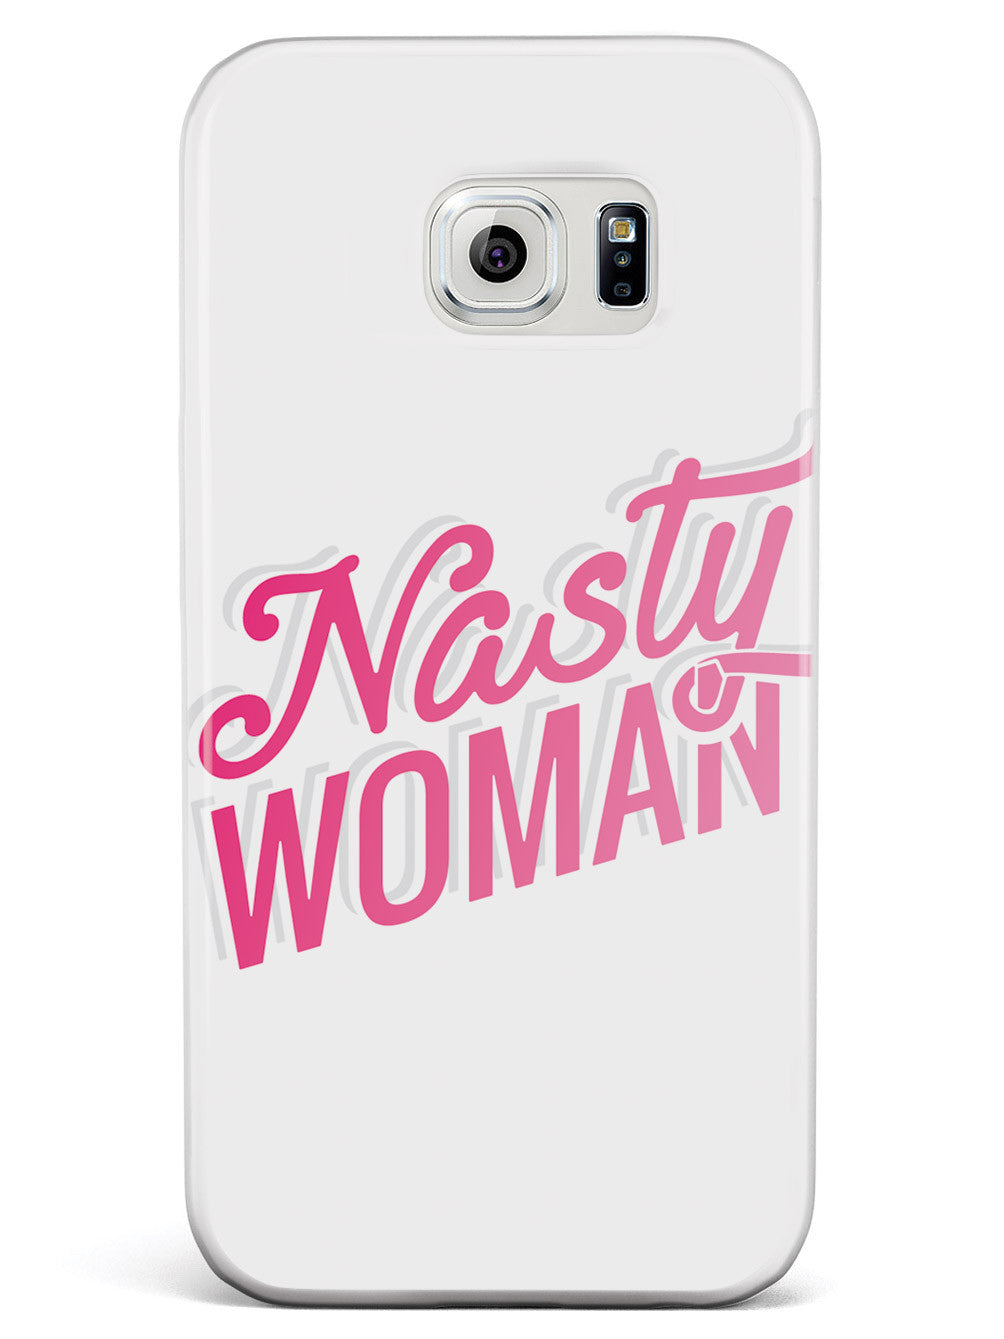 Nasty Woman - White Case